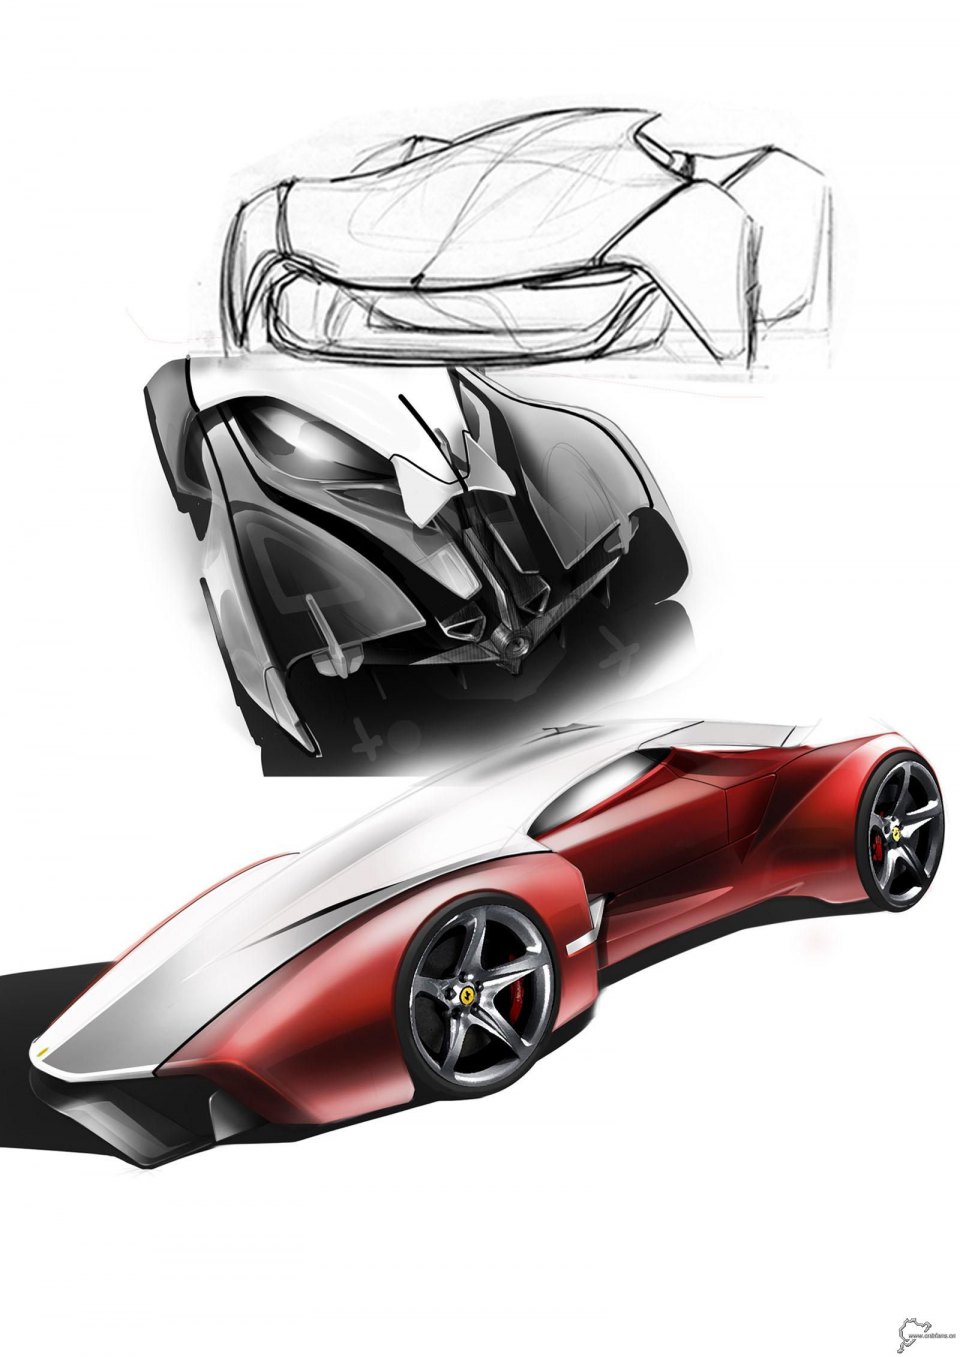 法拉利 概念车1600px手绘及模型图